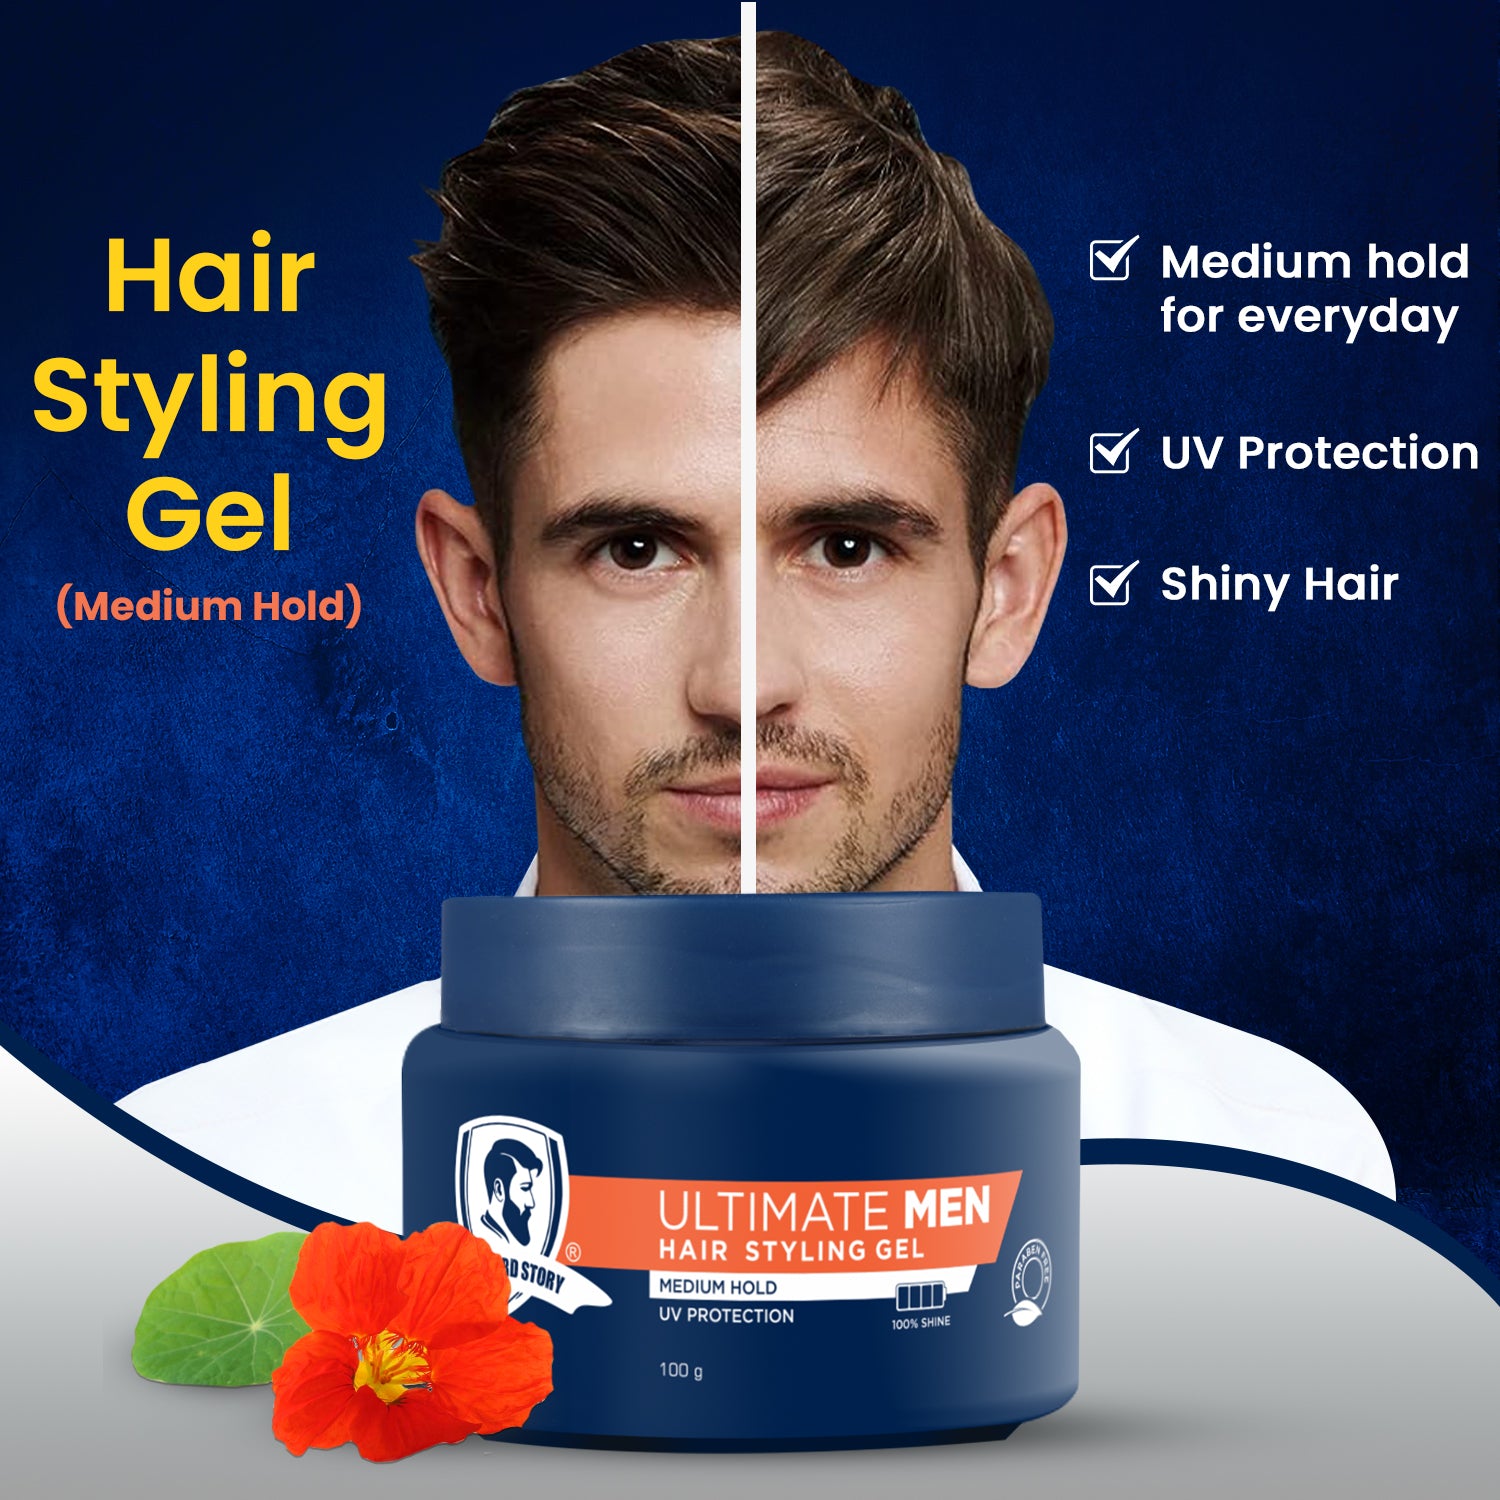 Hair Styling Gel for Men, Medium Hold, UV Protection